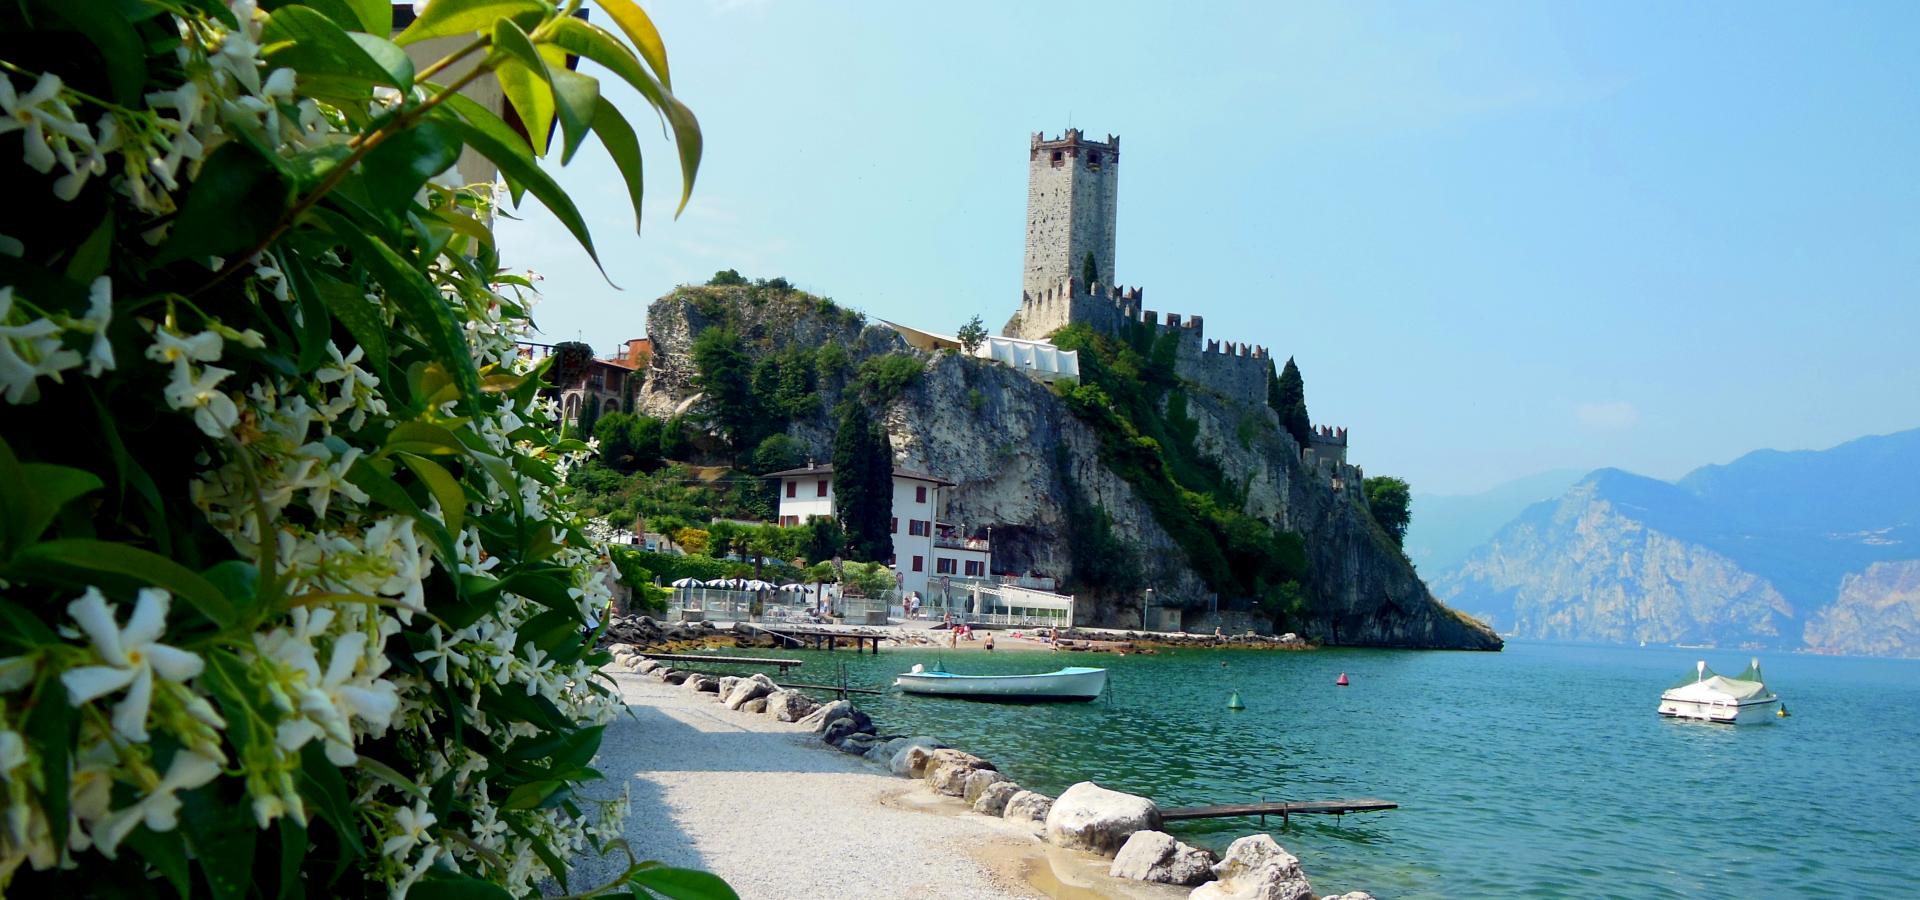 Case vacanza a Malcesine sul lago di Garda